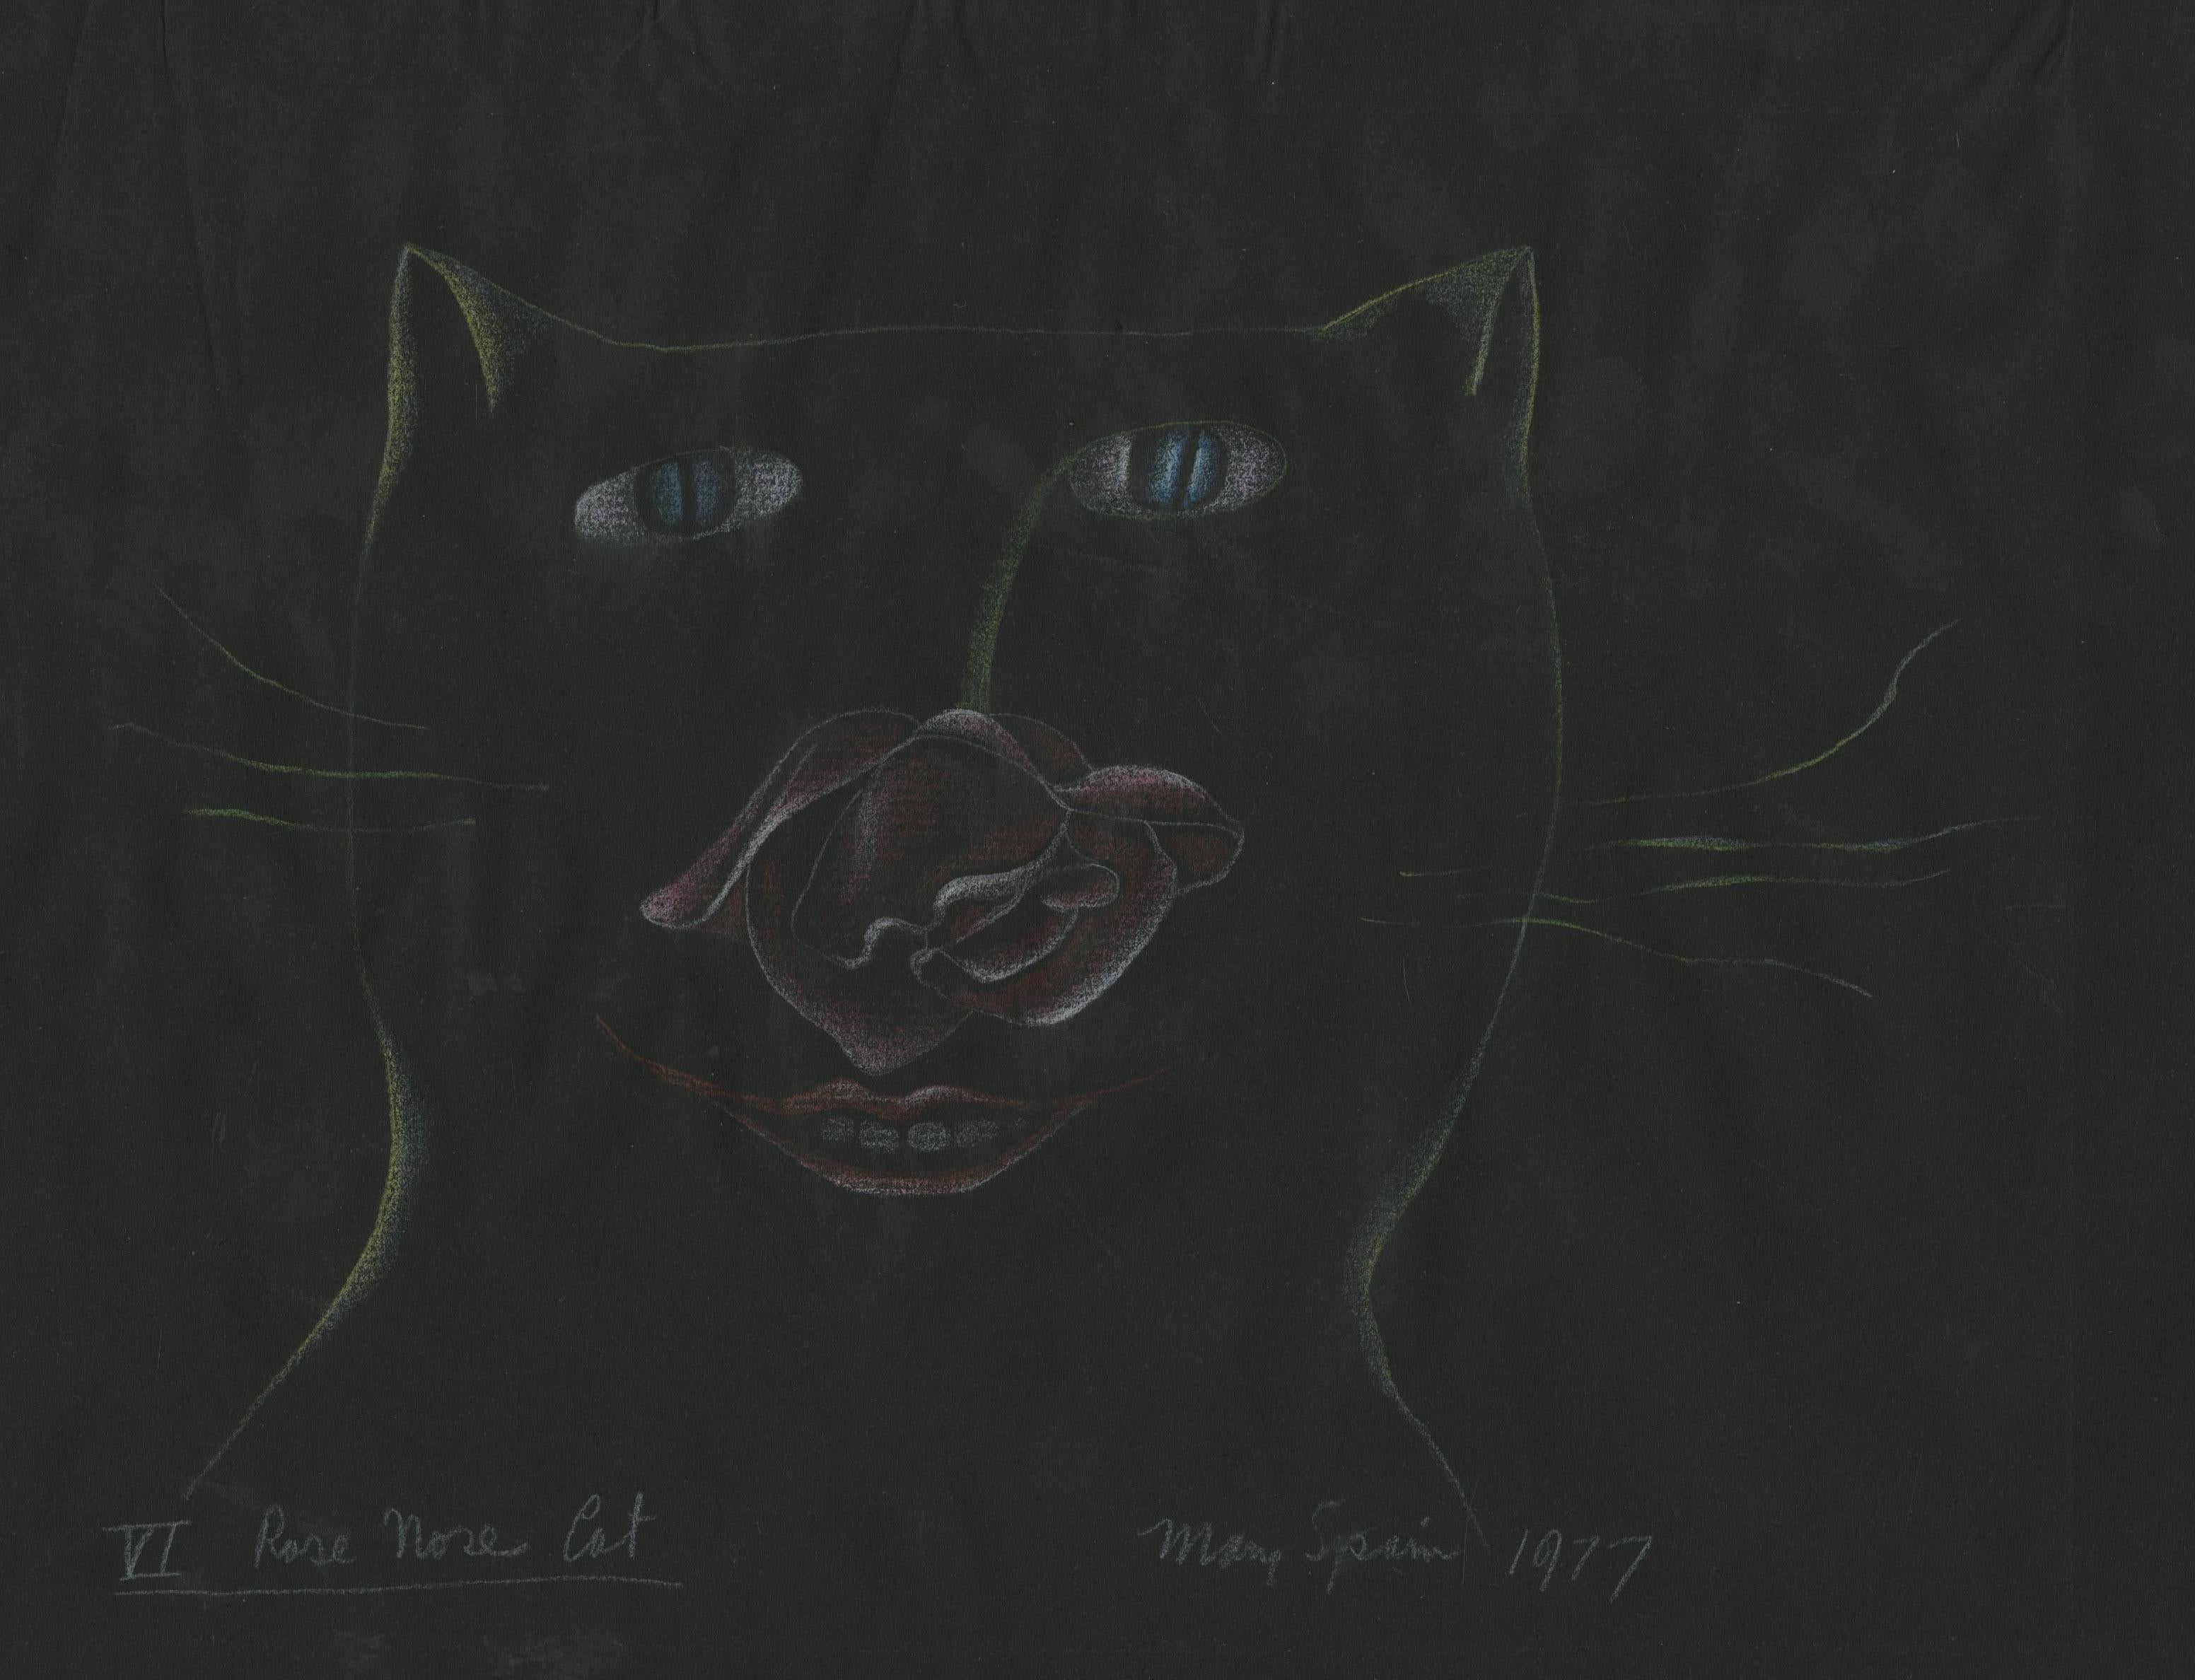 VI Rose Nose Cat